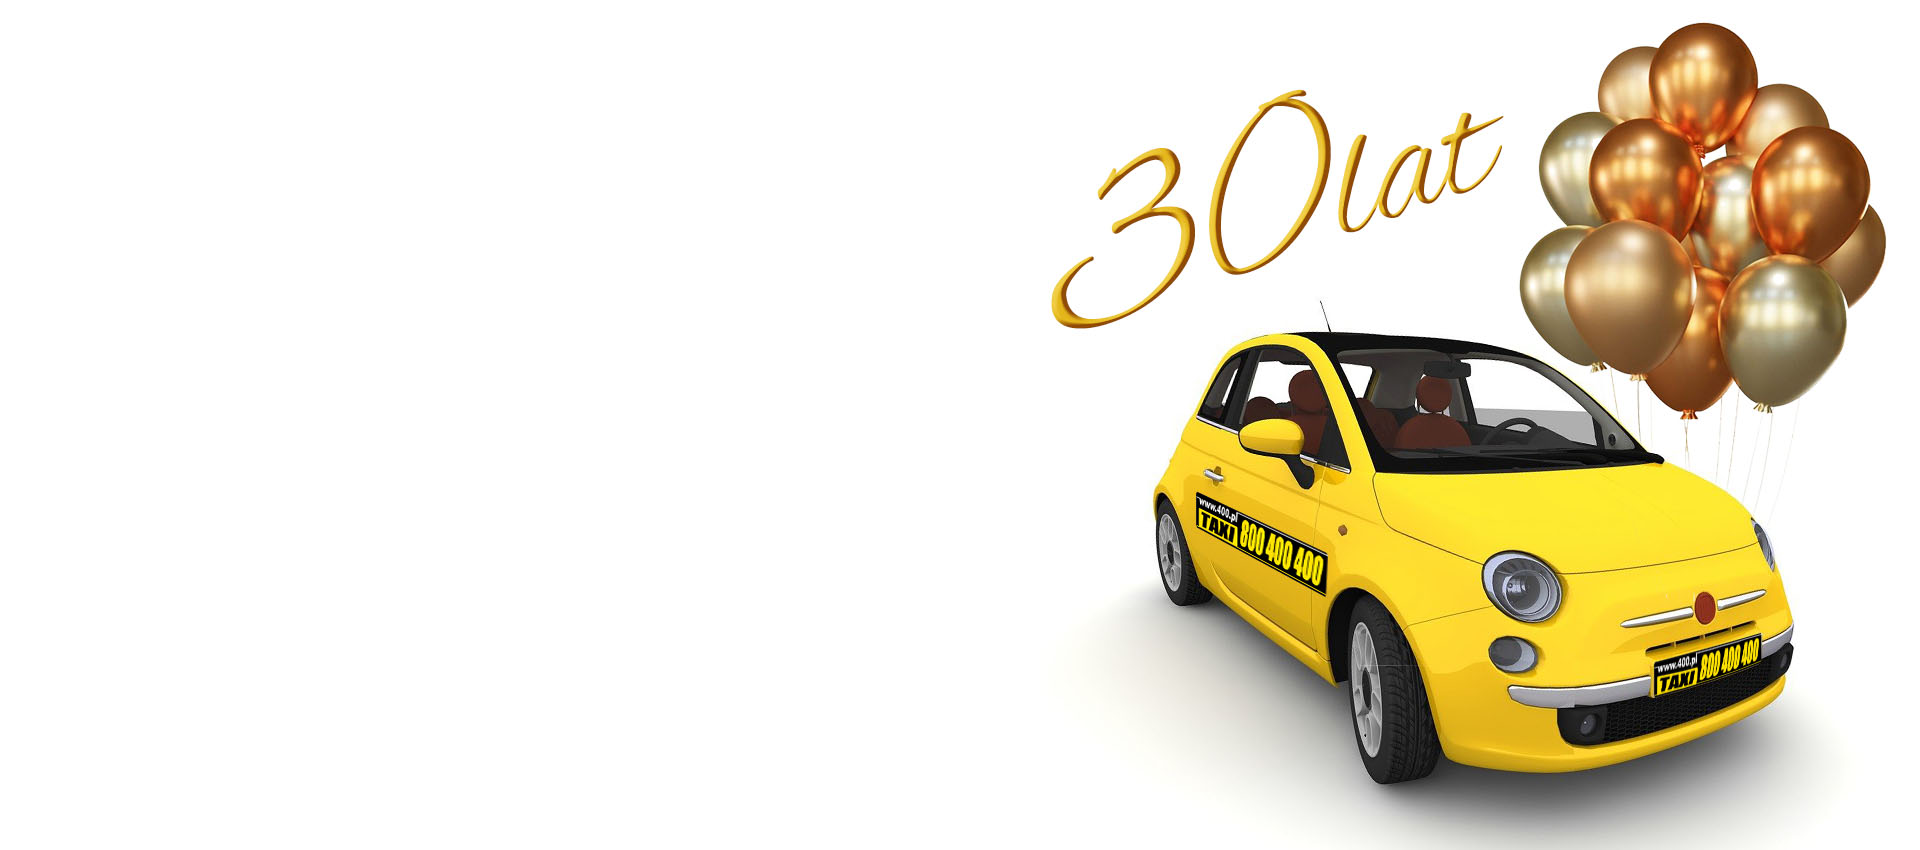 Taxi 800400400 świętuje 30 lat działalności w Łodzi